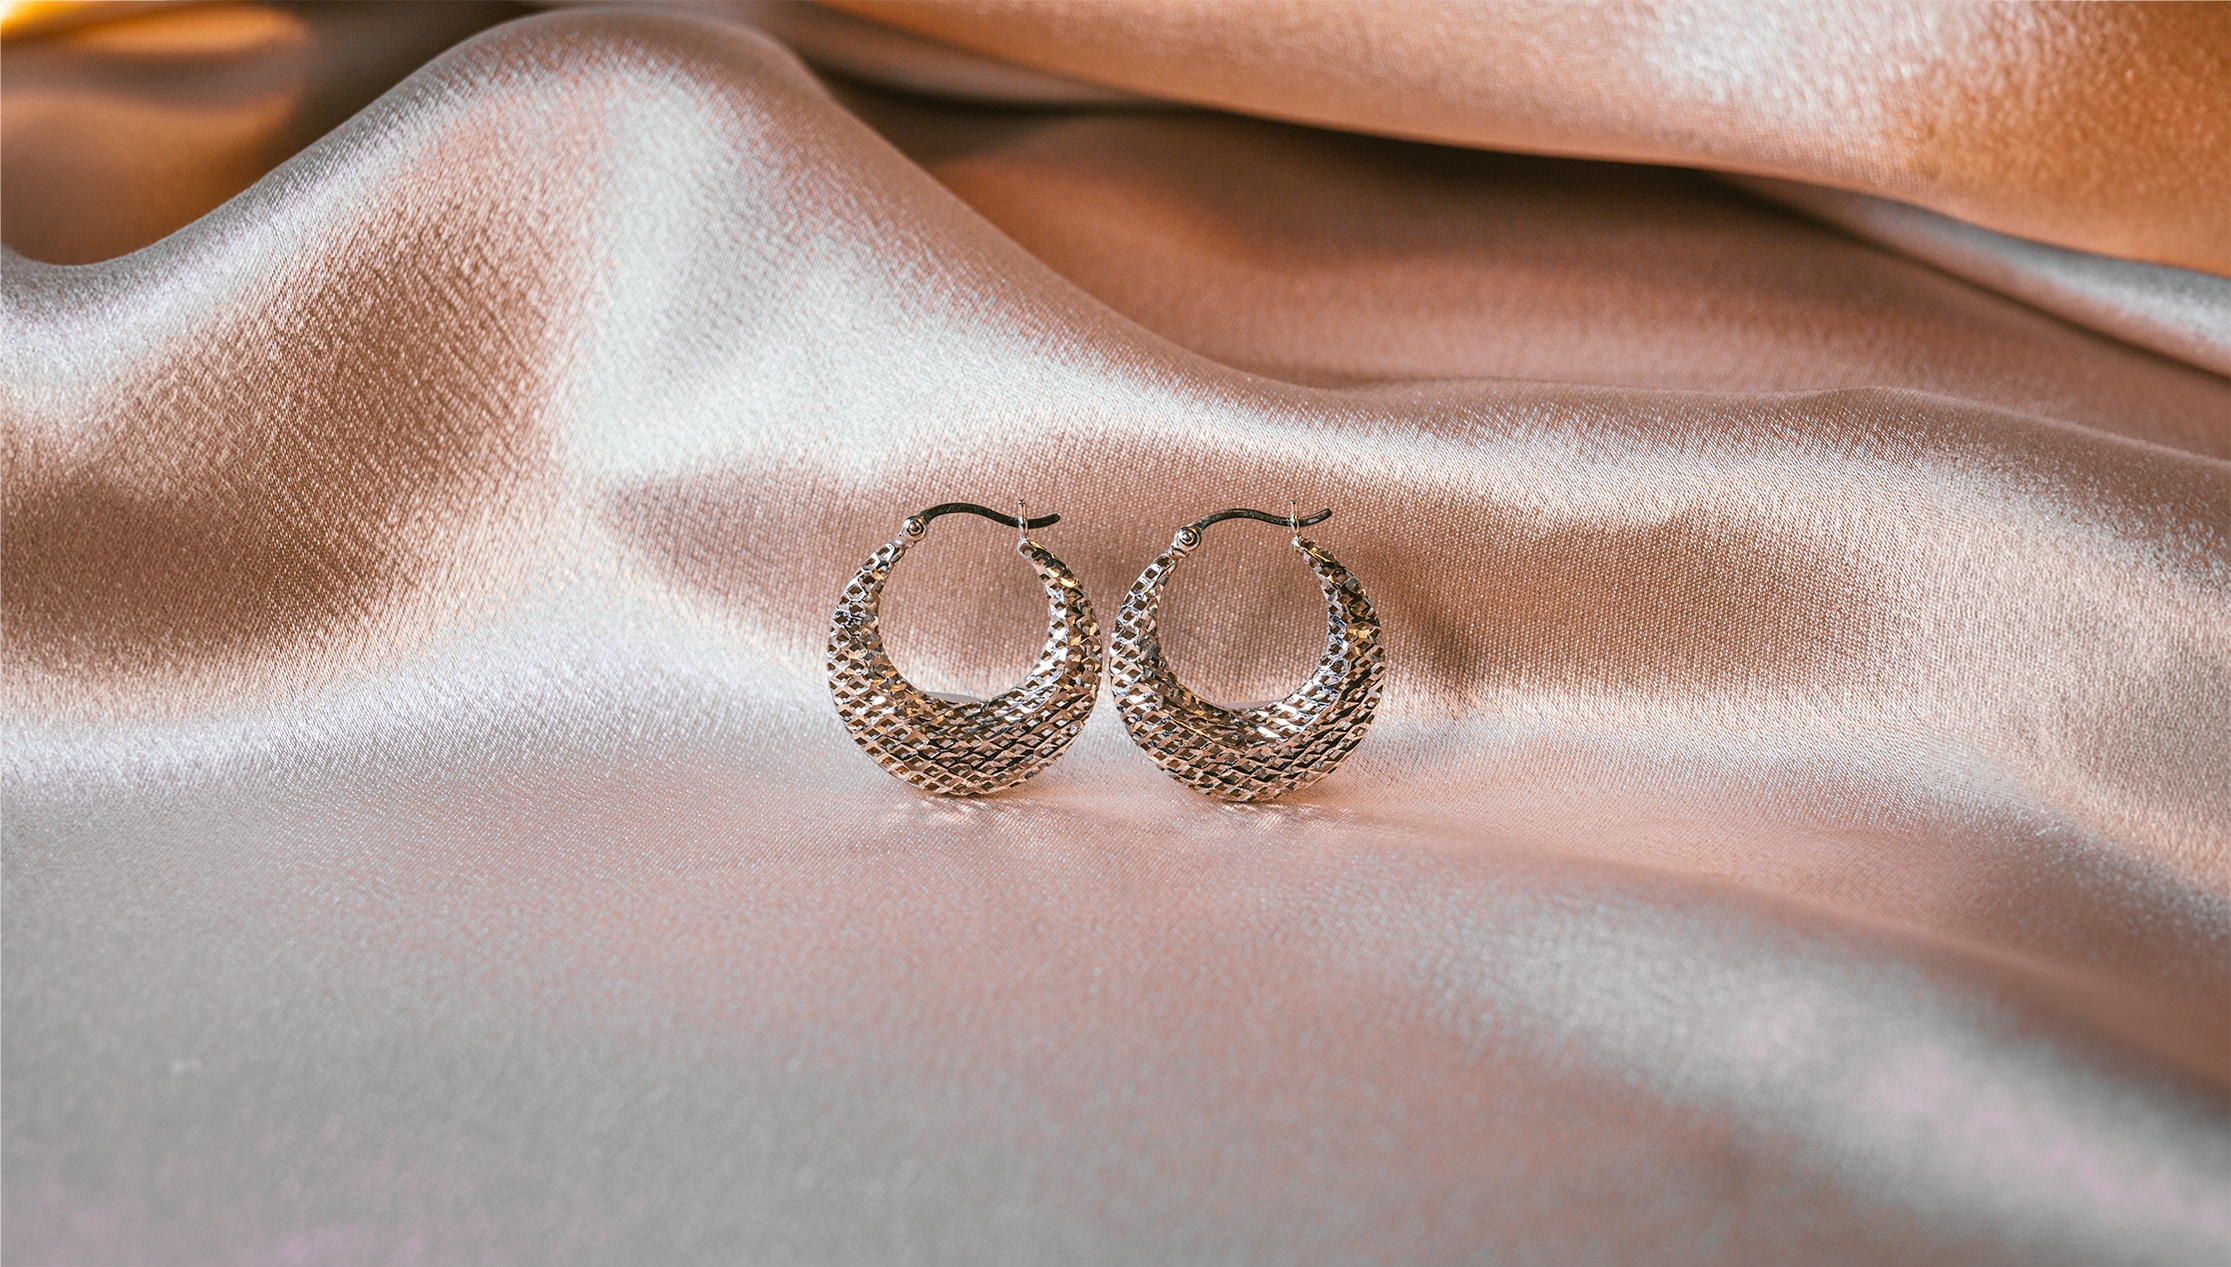 Pair of white gold earrings.